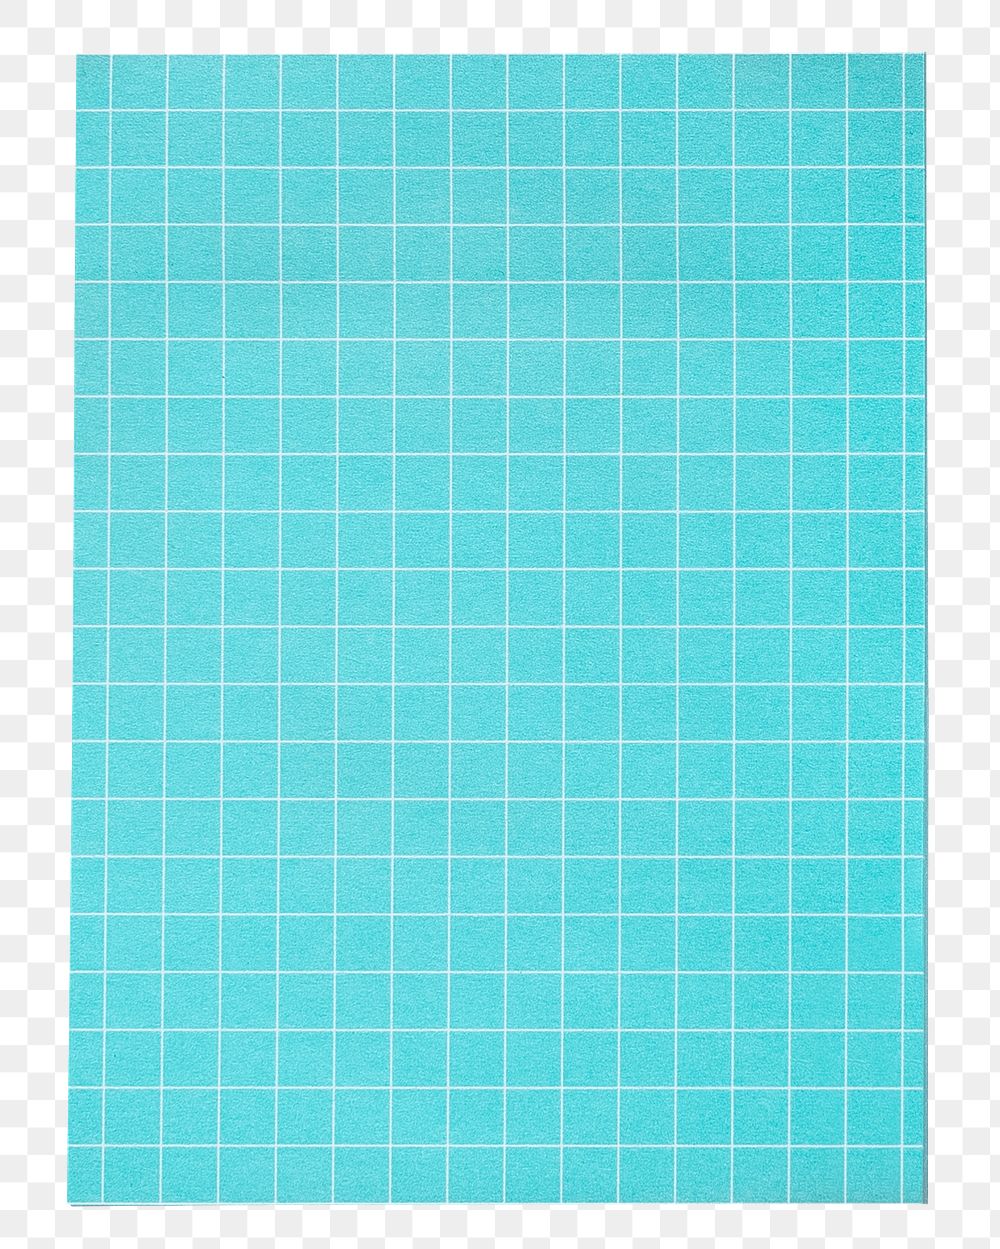 Blue grid patterned paper note design element